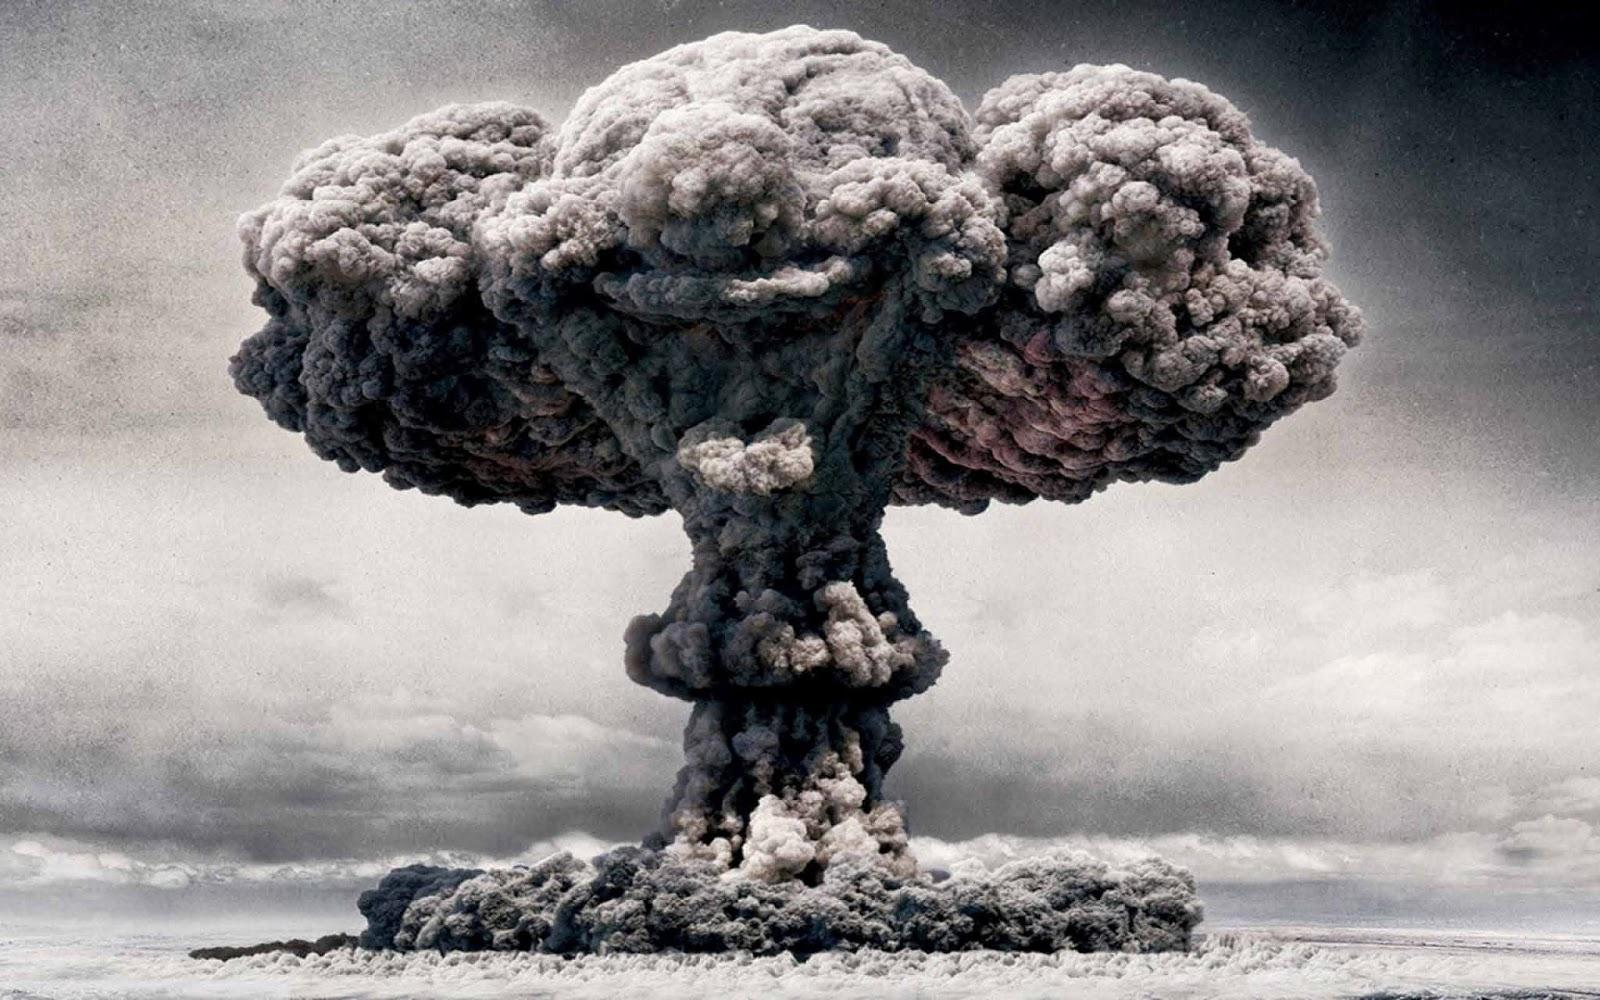 Une perspective diffÃ©rente : Le Japon n’aurait-il pas pu Ãªtre bombardÃ© atomiquement ?